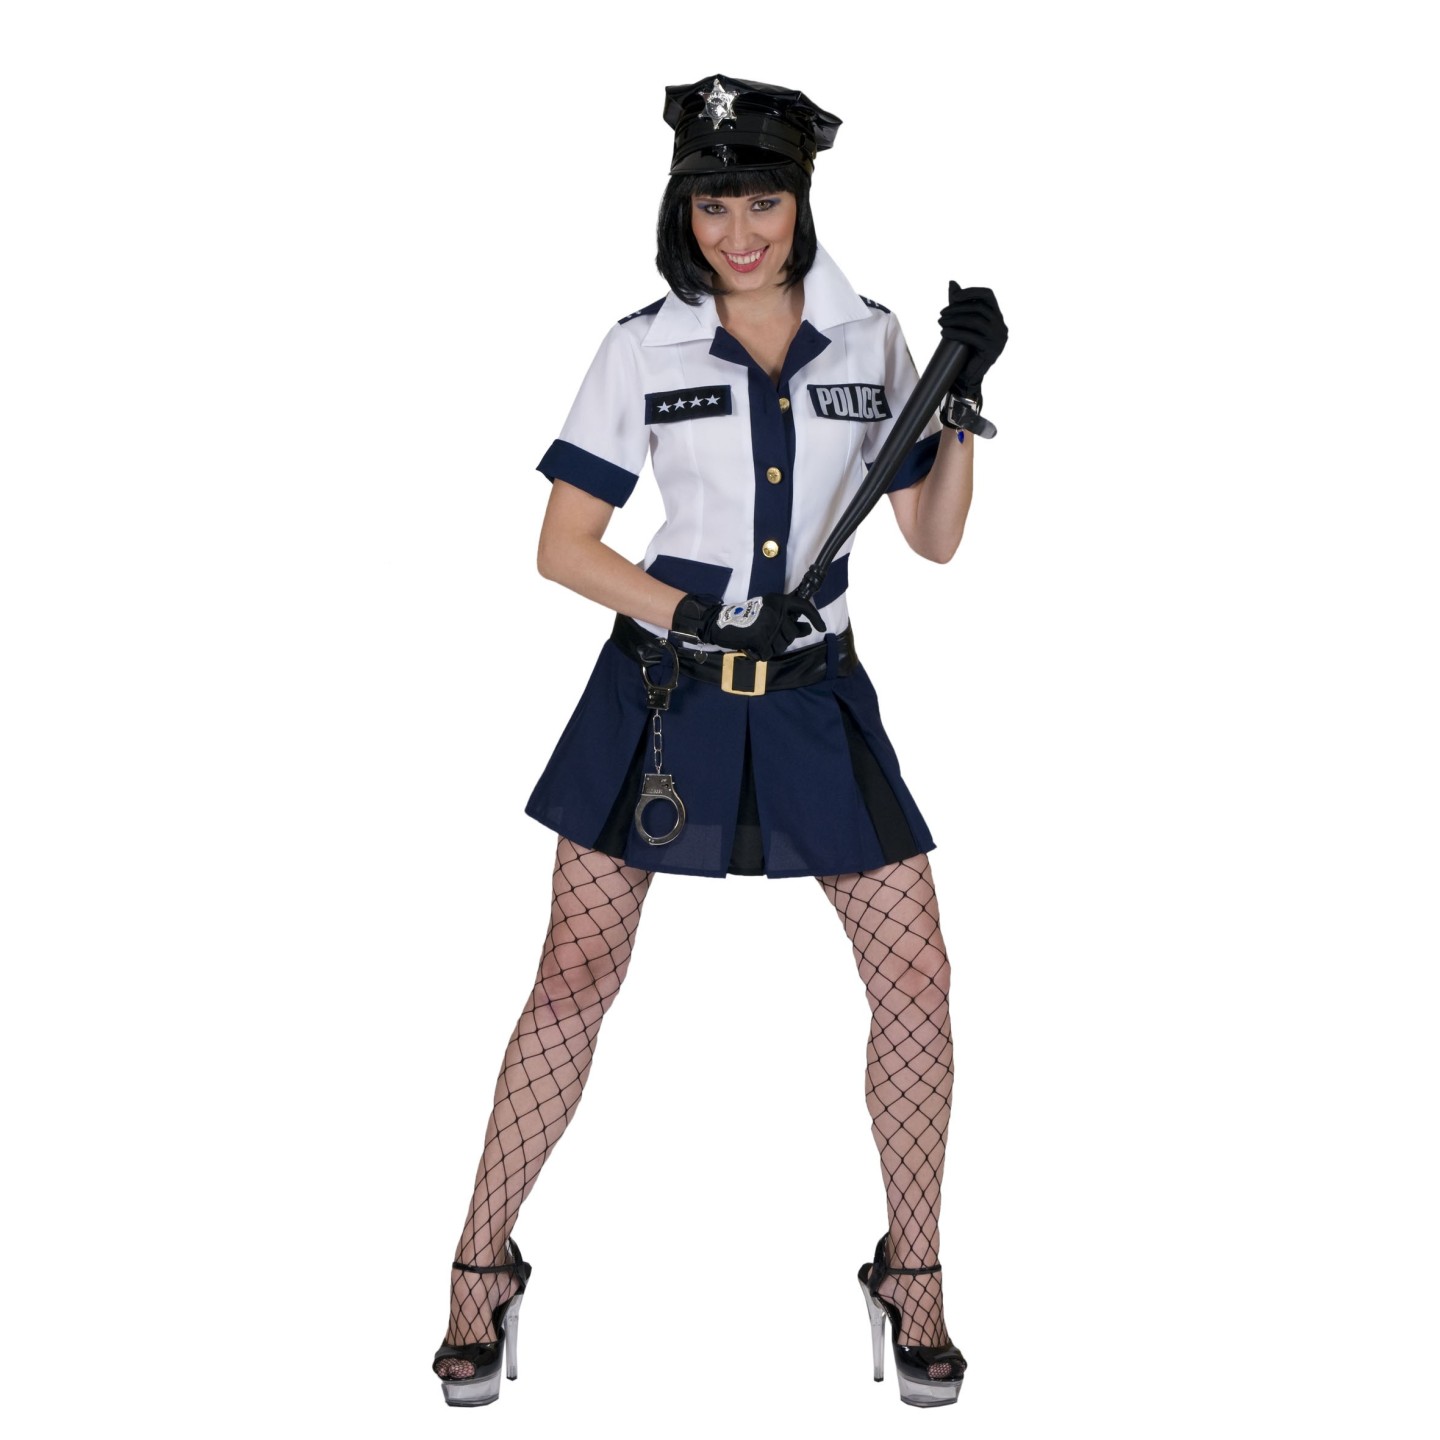 gekruld vertrekken zijde Politie jurkje dames | Jokershop.be - Carnaval kostuums